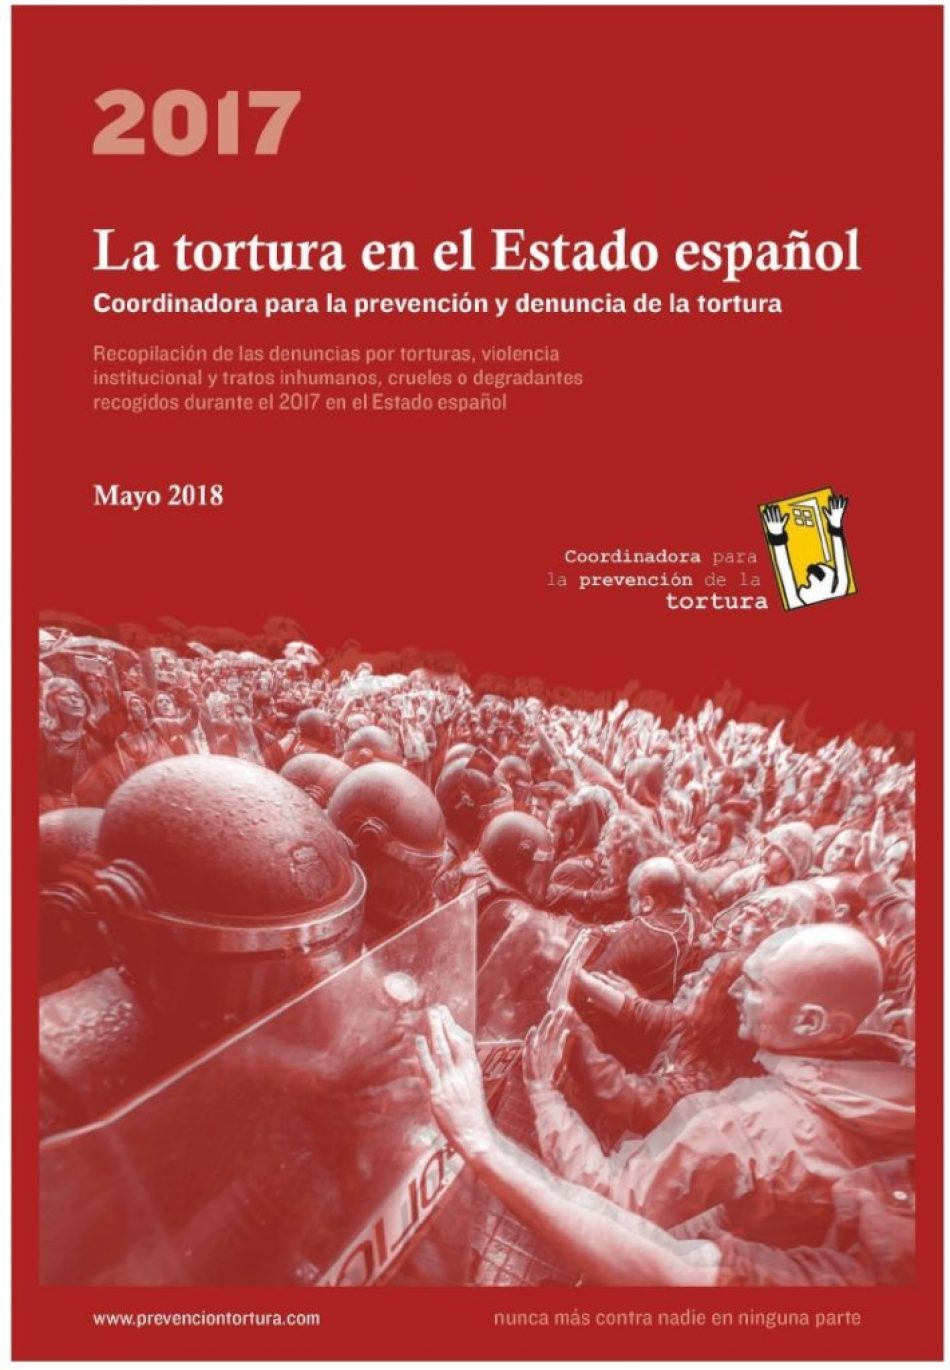 La tortura en el estado español: Informe de 2017